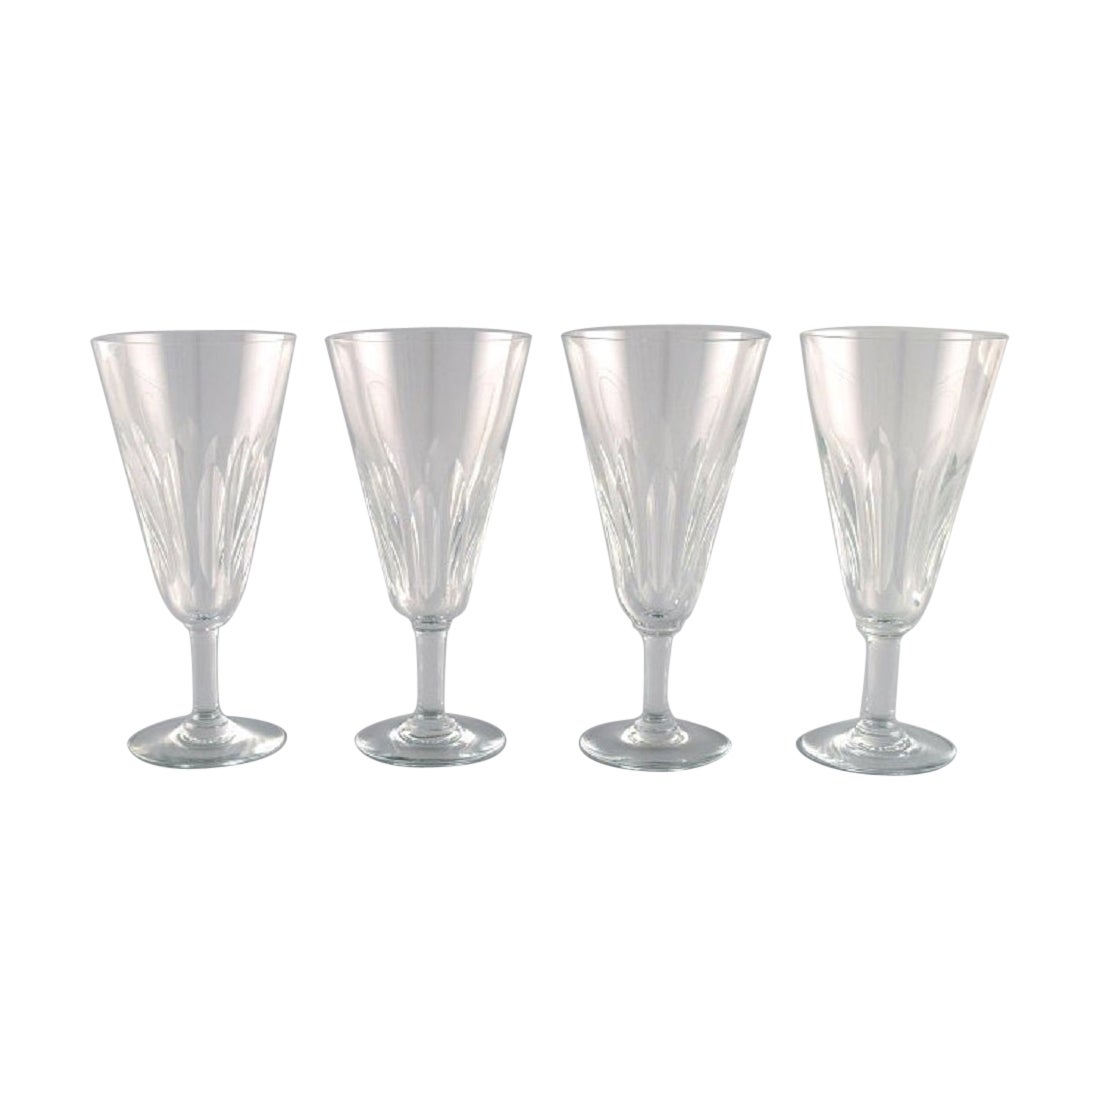 Baccarat, Frankreich, Vier Art-Déco-Champagnerflöten aus klarem Kristallglas